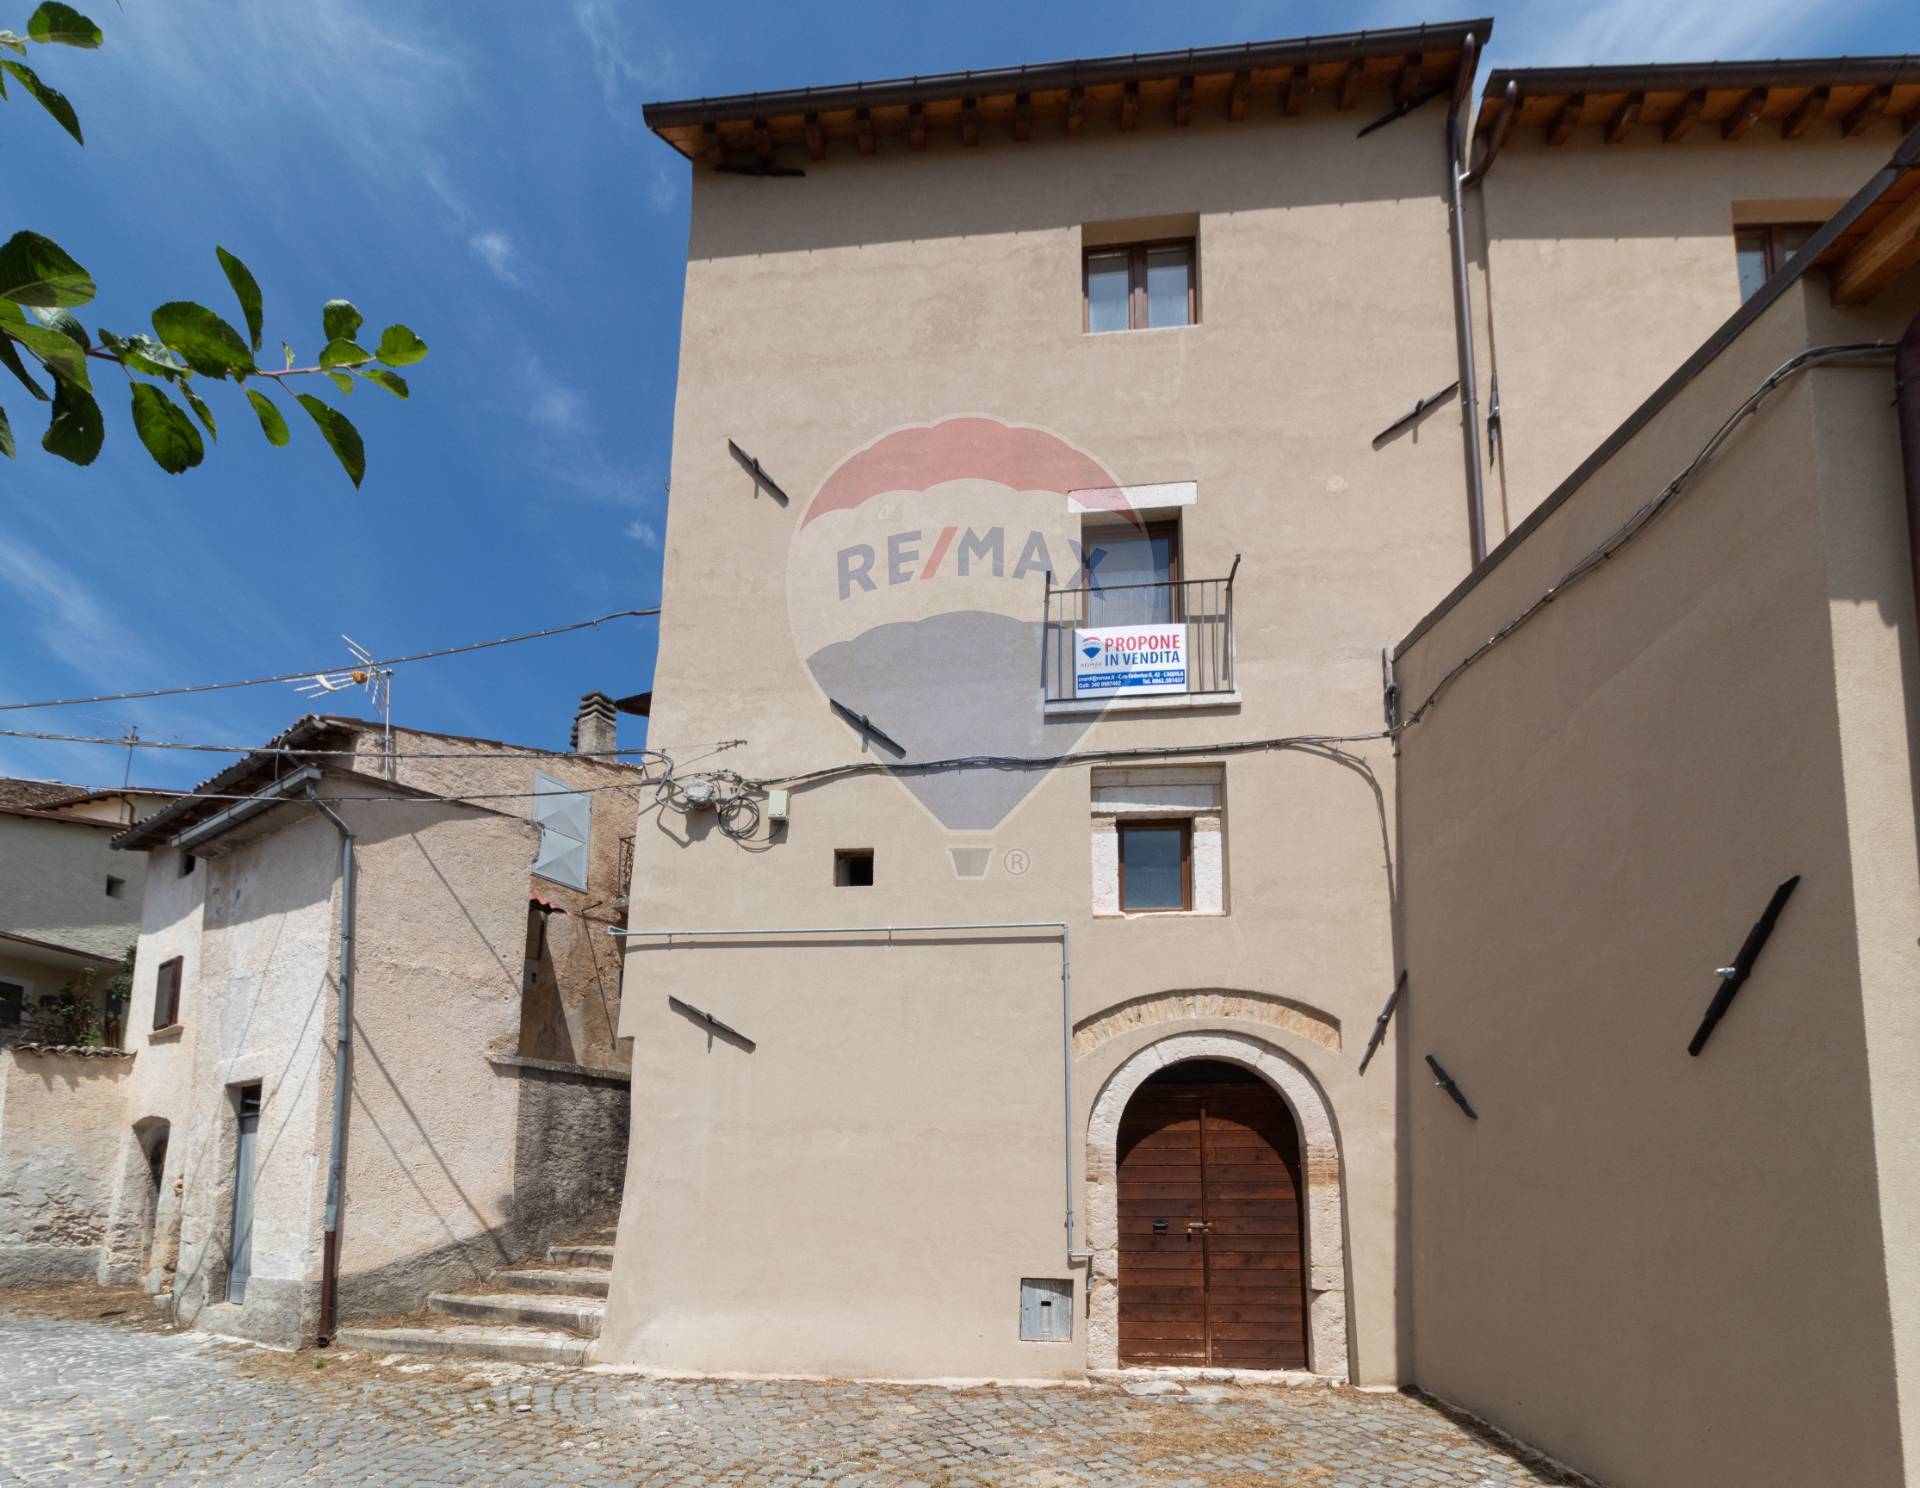 Appartamento in vendita a San Pio delle Camere, 2 locali, prezzo € 38.000 | CambioCasa.it